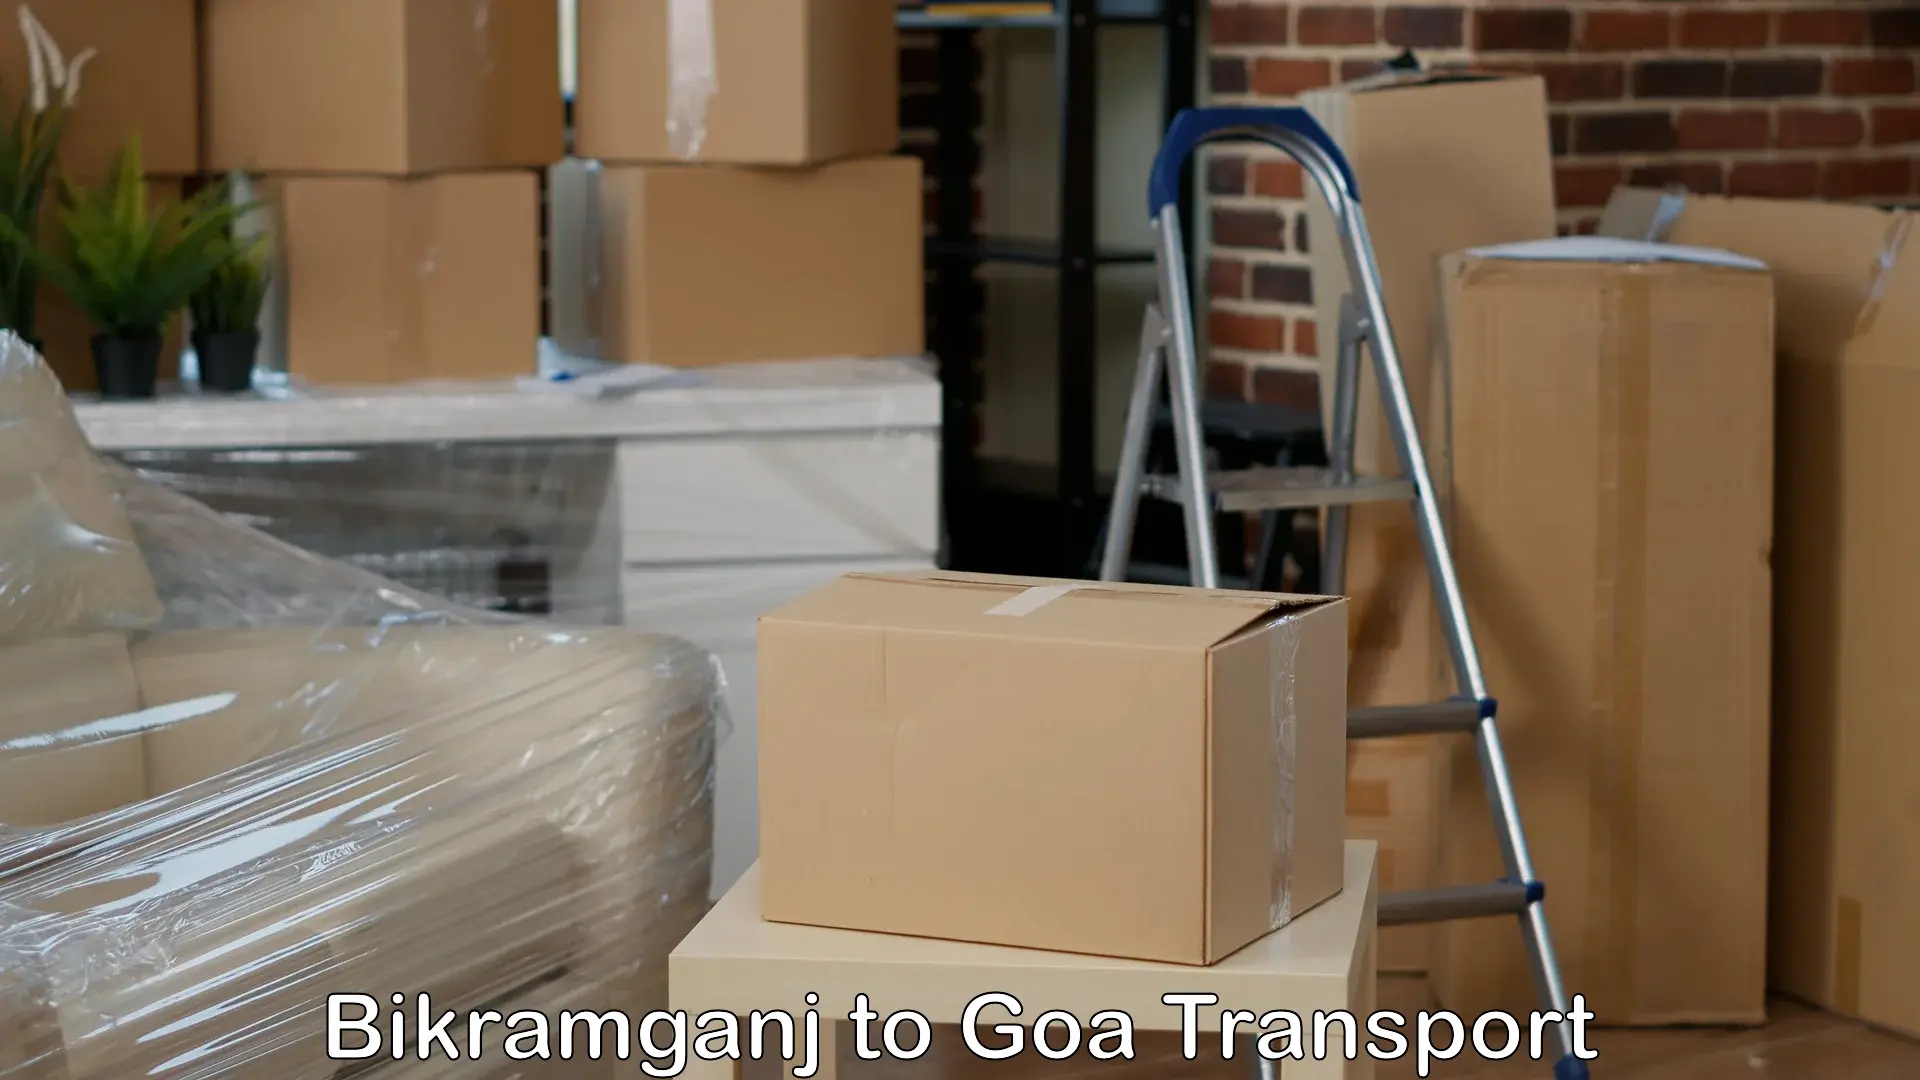 Road transport services Bikramganj to Goa